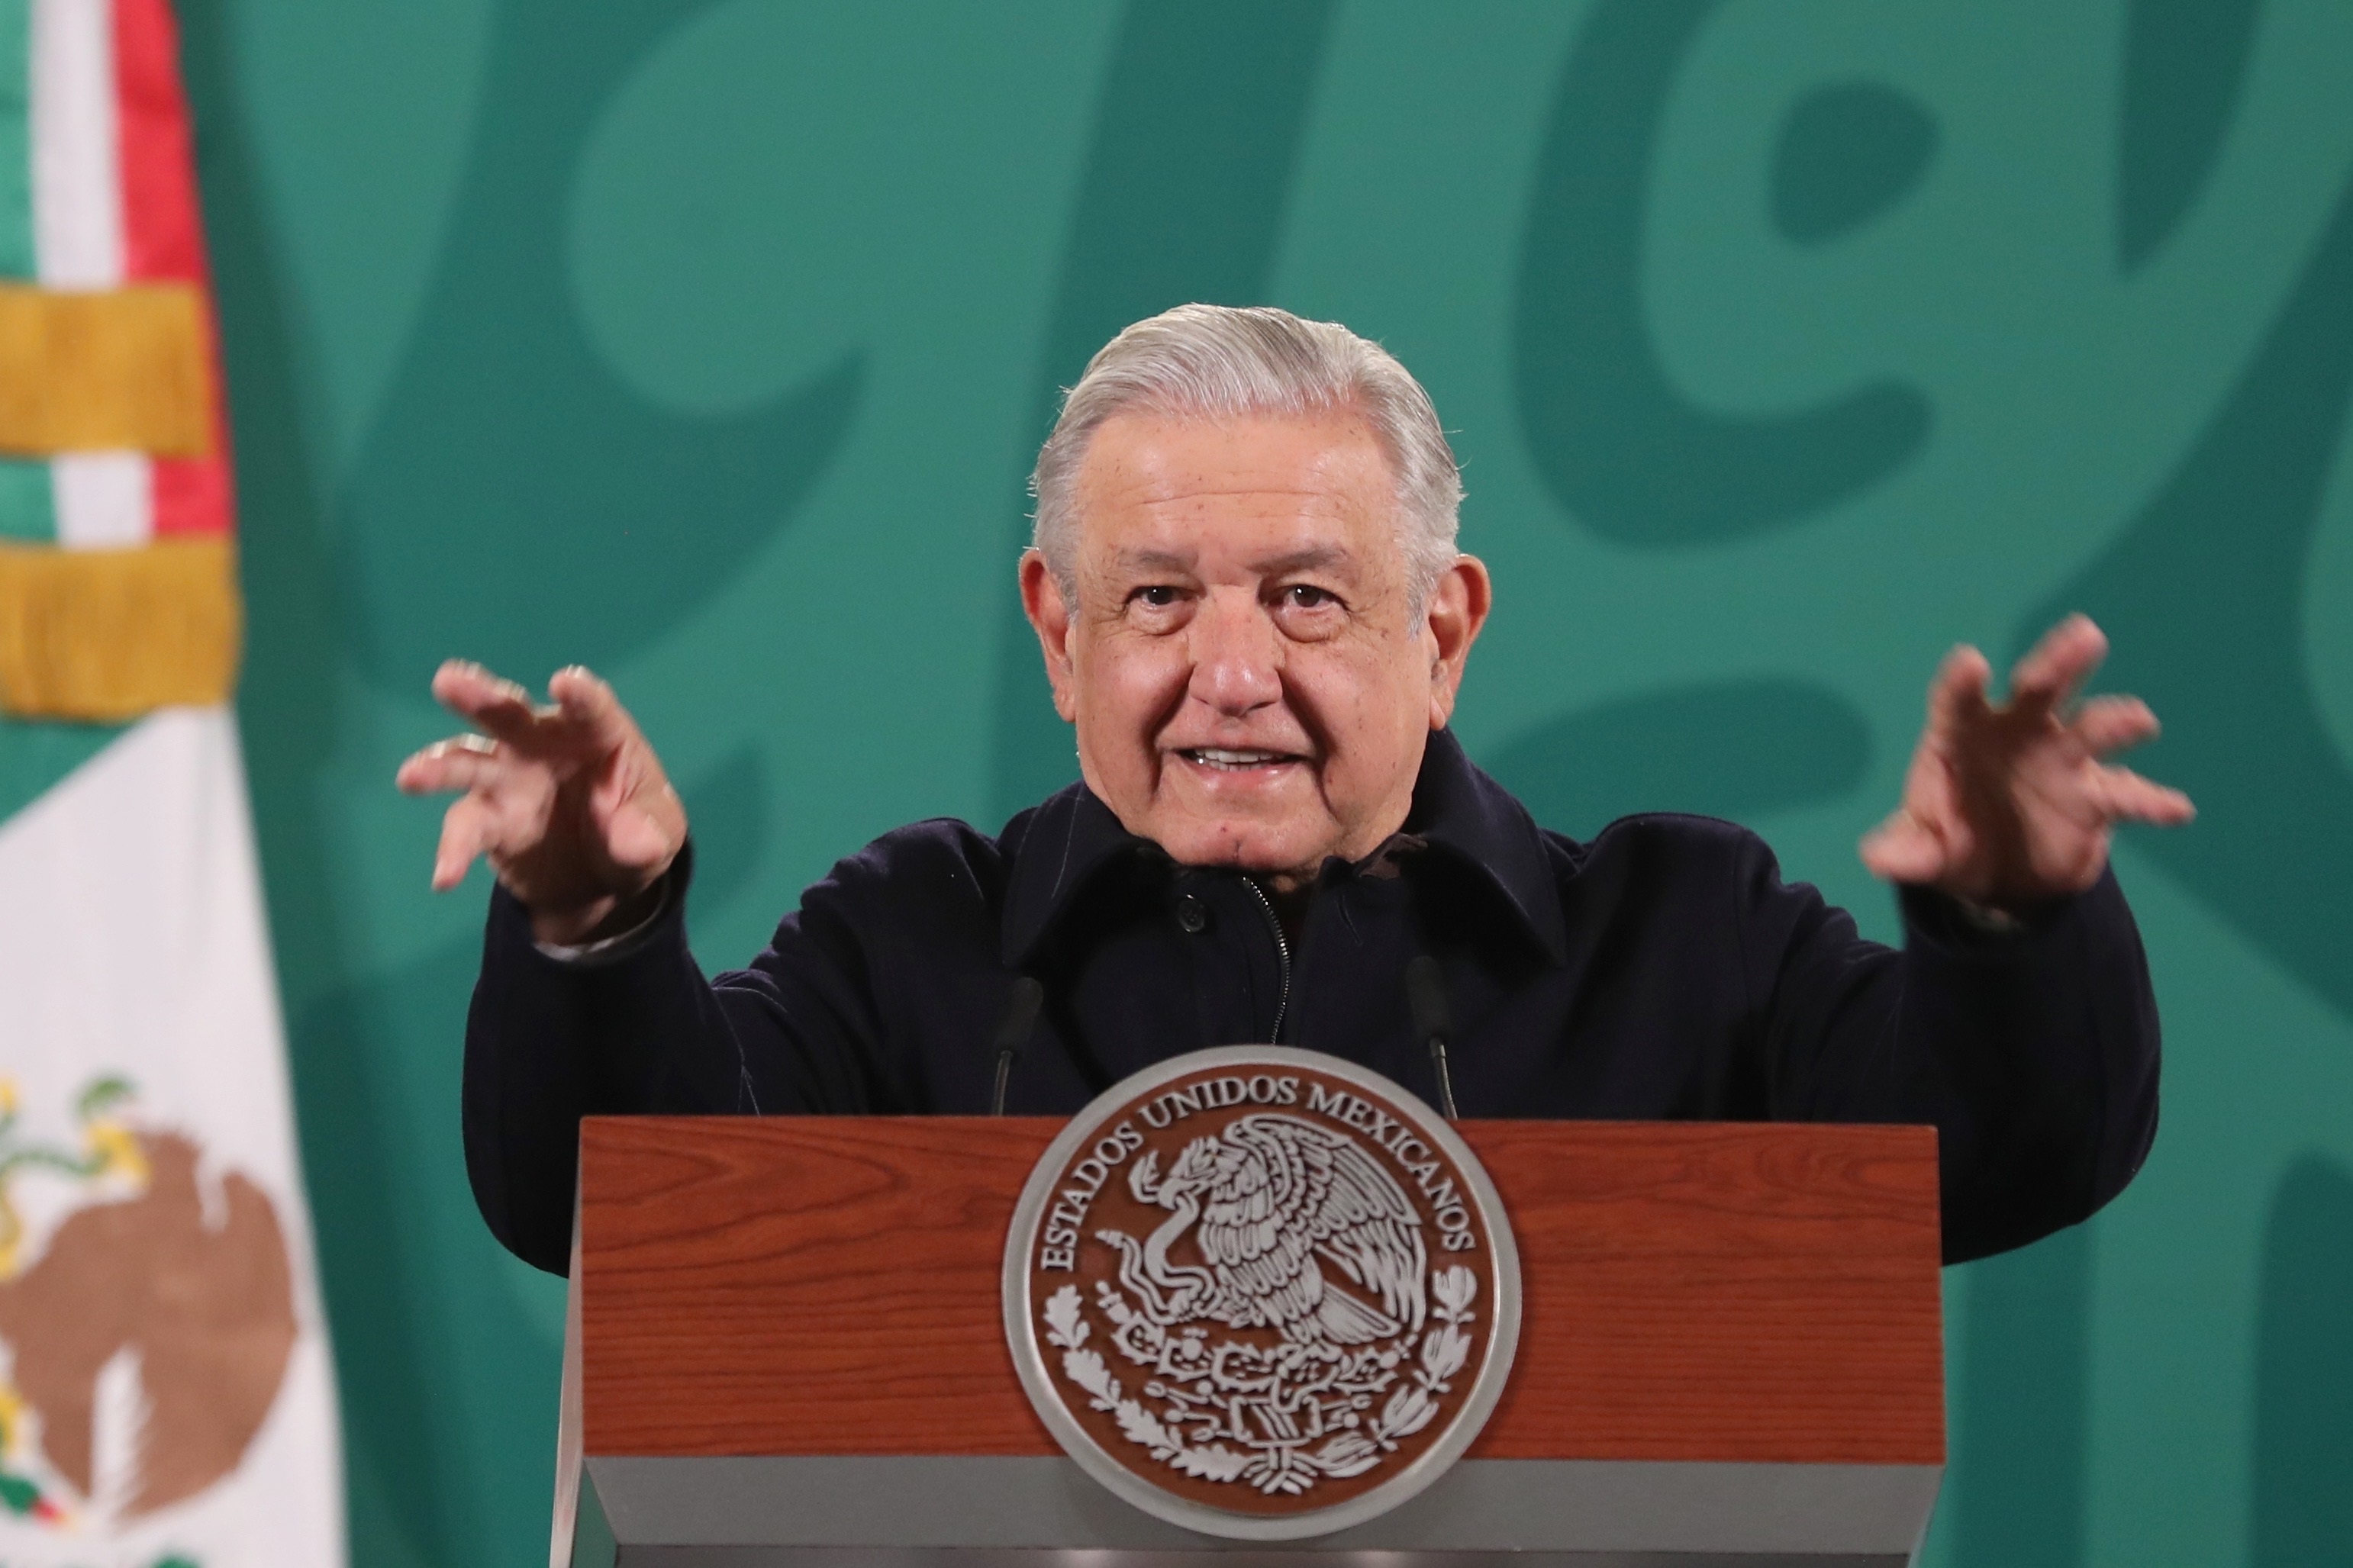 Durante la visita del presidente Andrés Manuel López Obrador a Tapachula, Chiapas, los migrantes protestaron crucificándose, encadenándose y cosiéndose los labios para exigir sus documentos. (Foto: EFE/ Sáshenka Gutiérrez/ Archivo)
